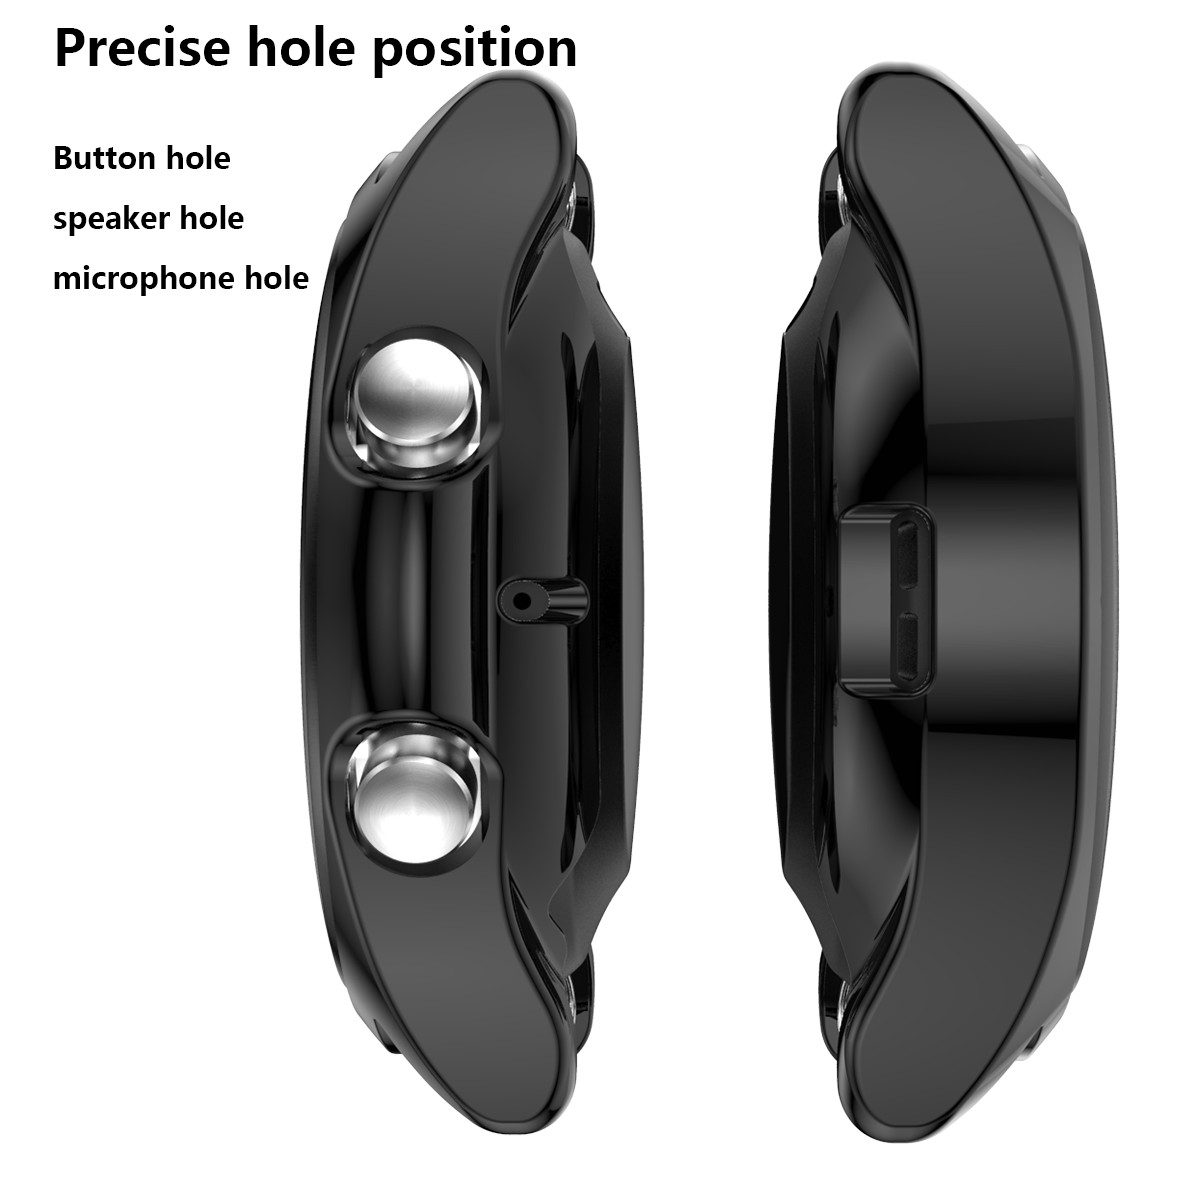 Ốp Silicon TPU Mạ Crom chống va đập cho Samsung Galaxy Watch 3 41mm / 45mm